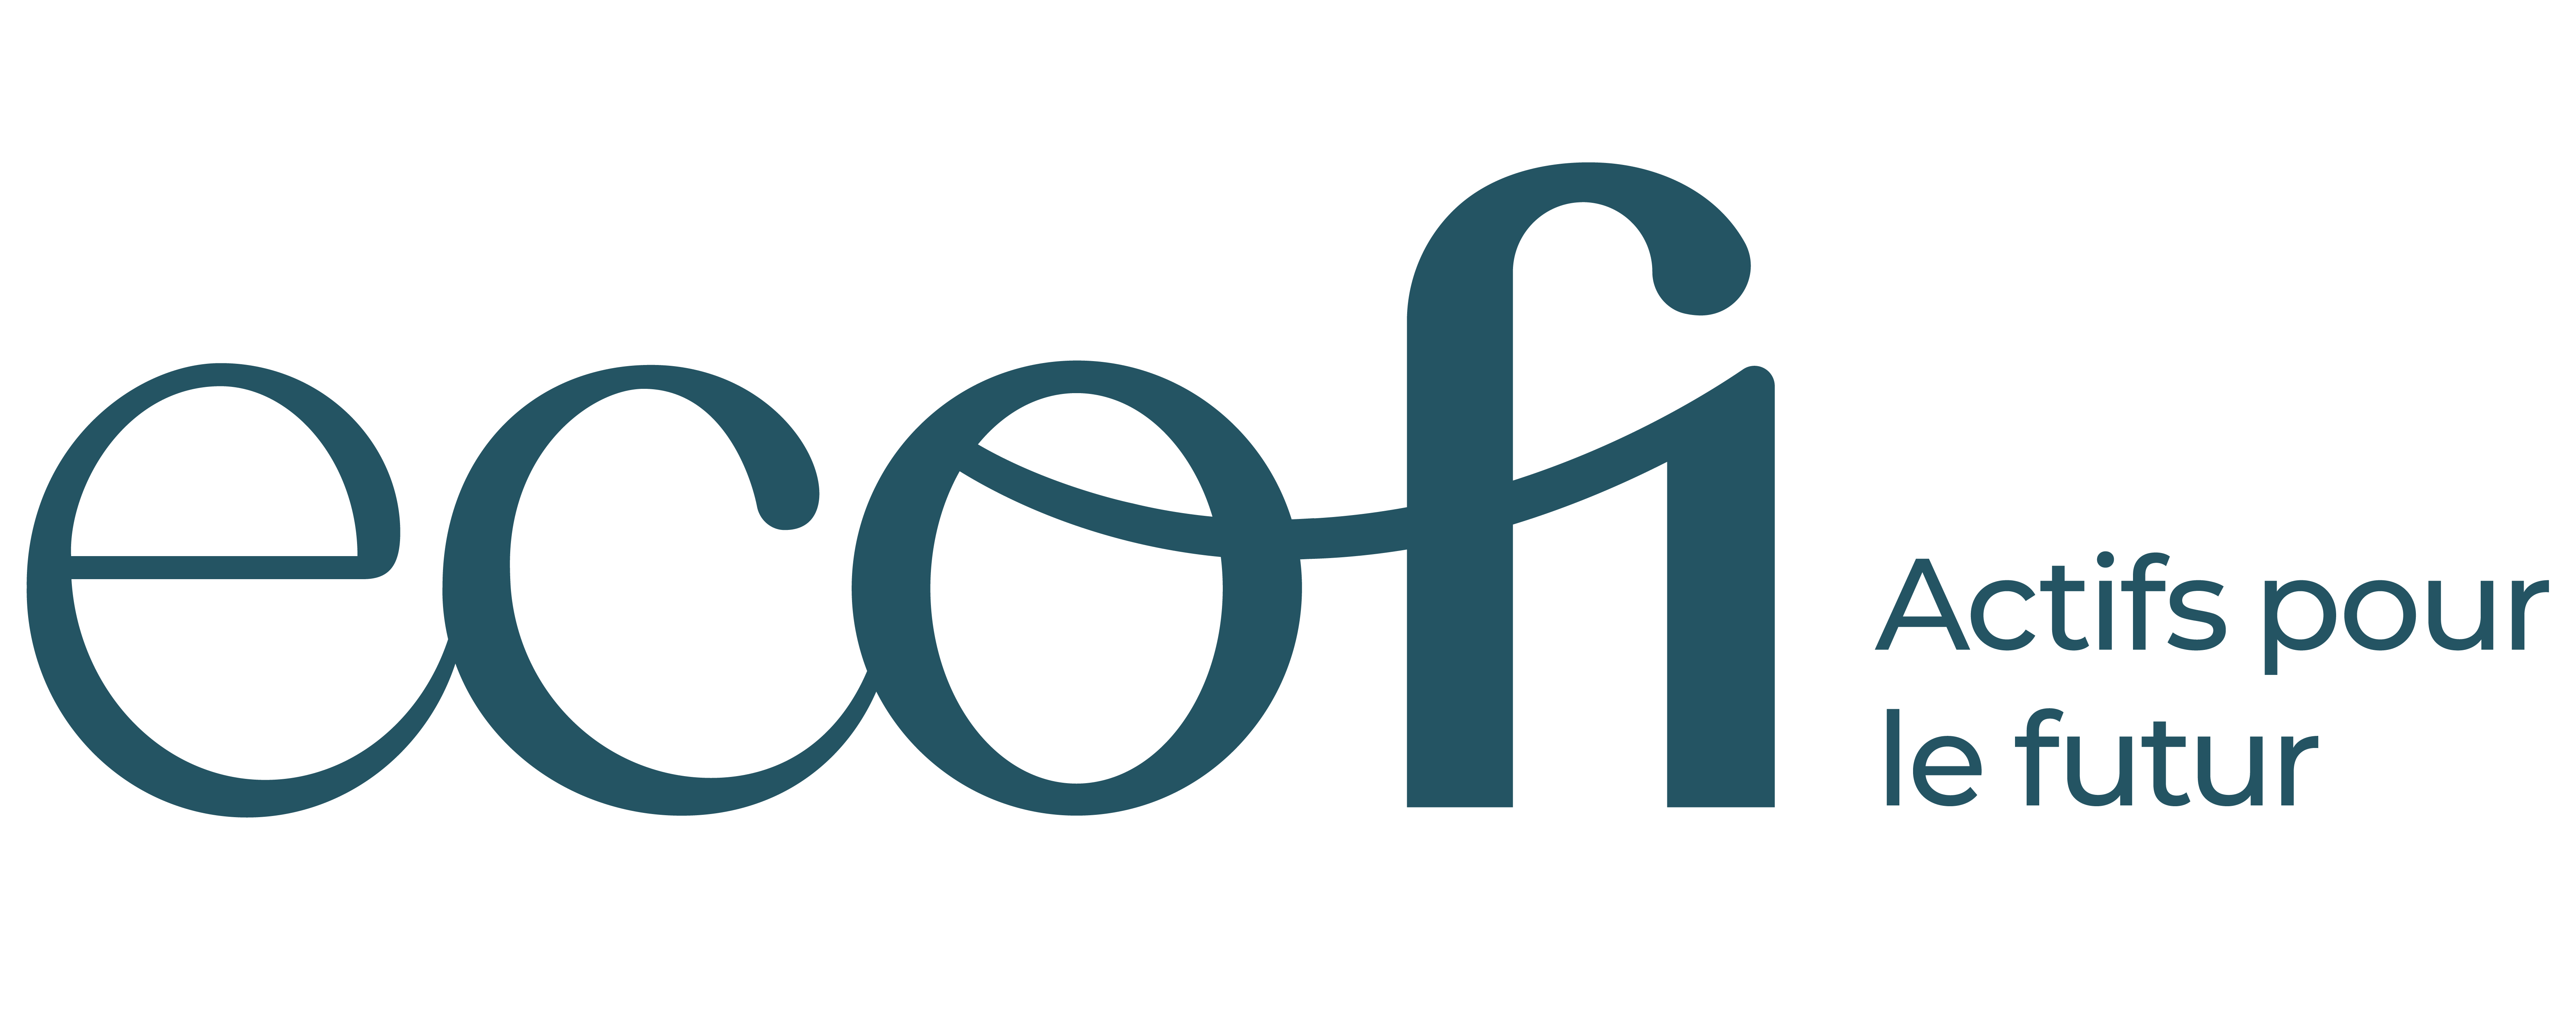 Les informations sur Ecofi